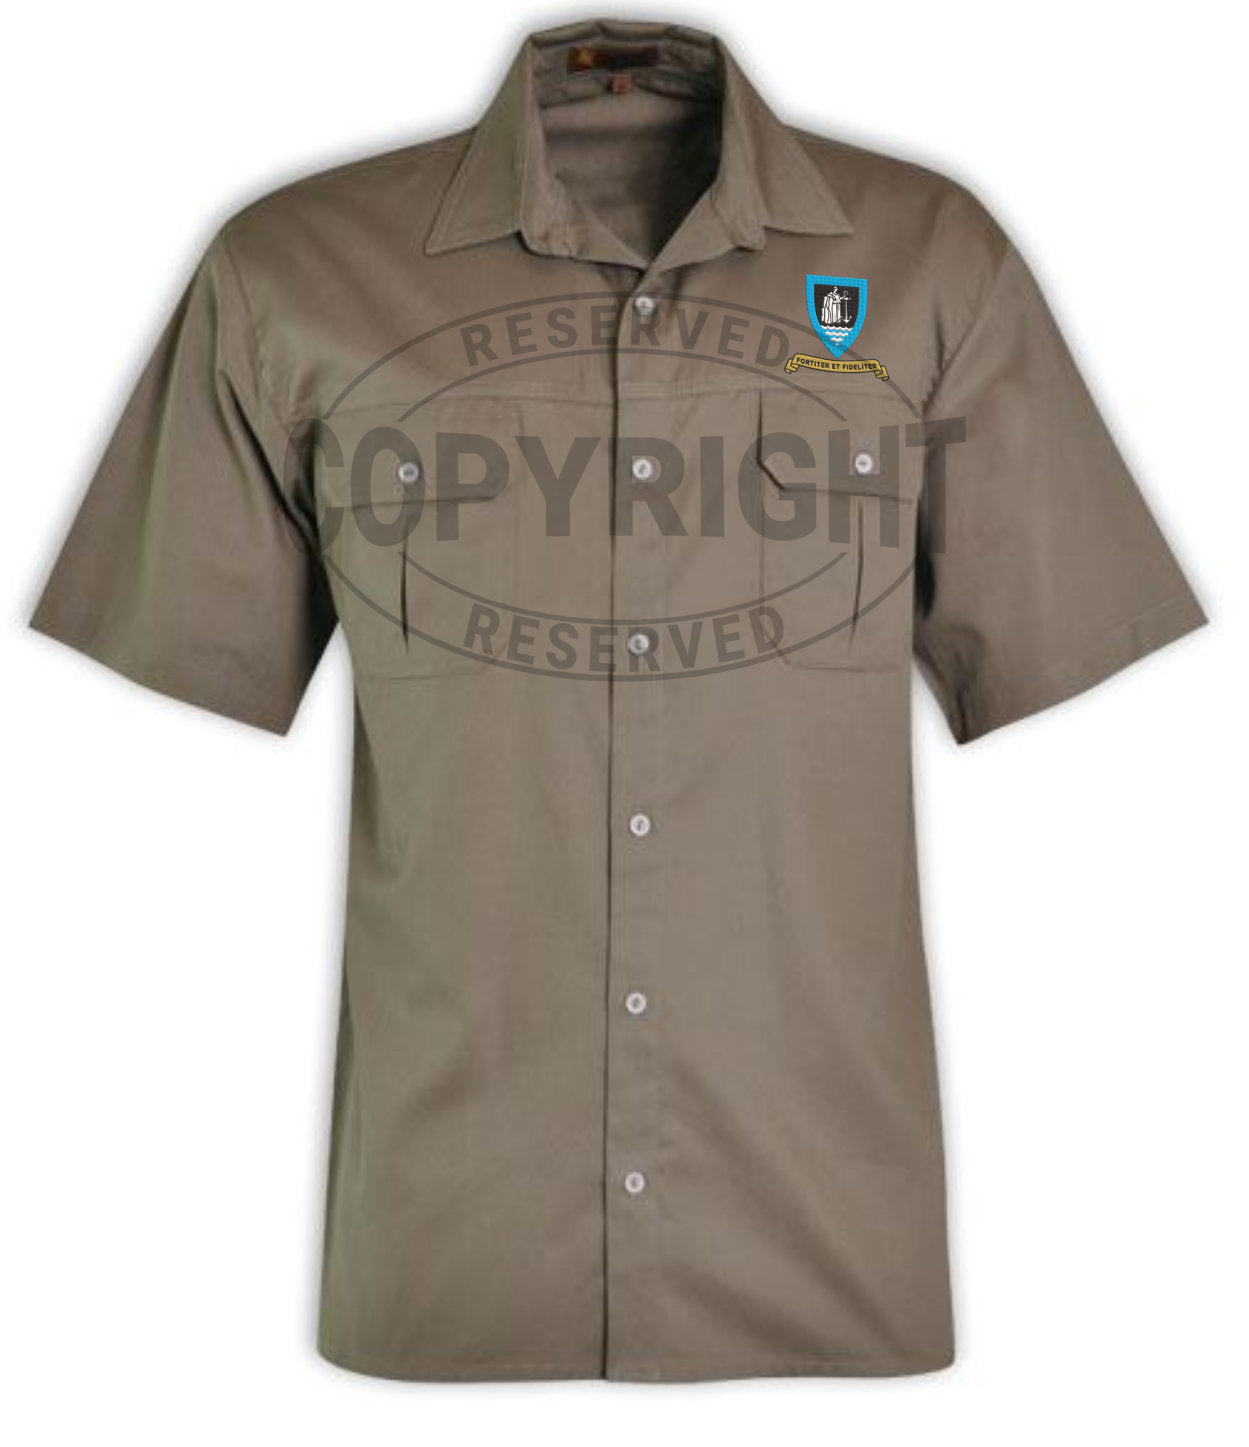 1 SACC Battalion Bush Shirt: IBUSH-1